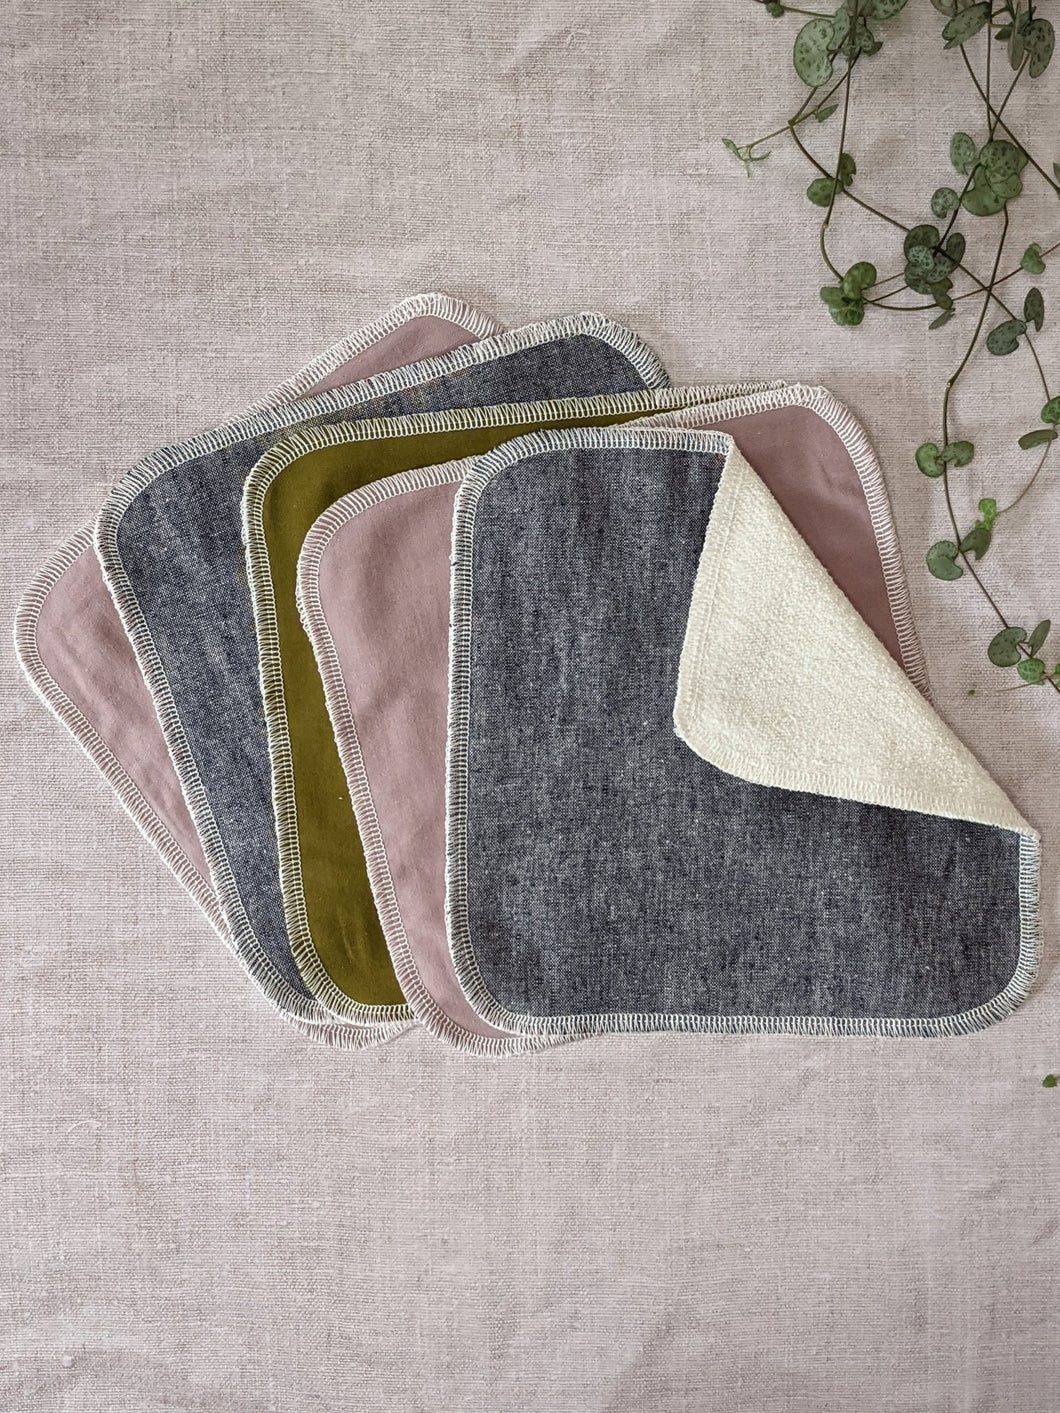 Unpaper towels - set 3 - Kitchen - The Conscious Sewist - kitchen - unpaper towels